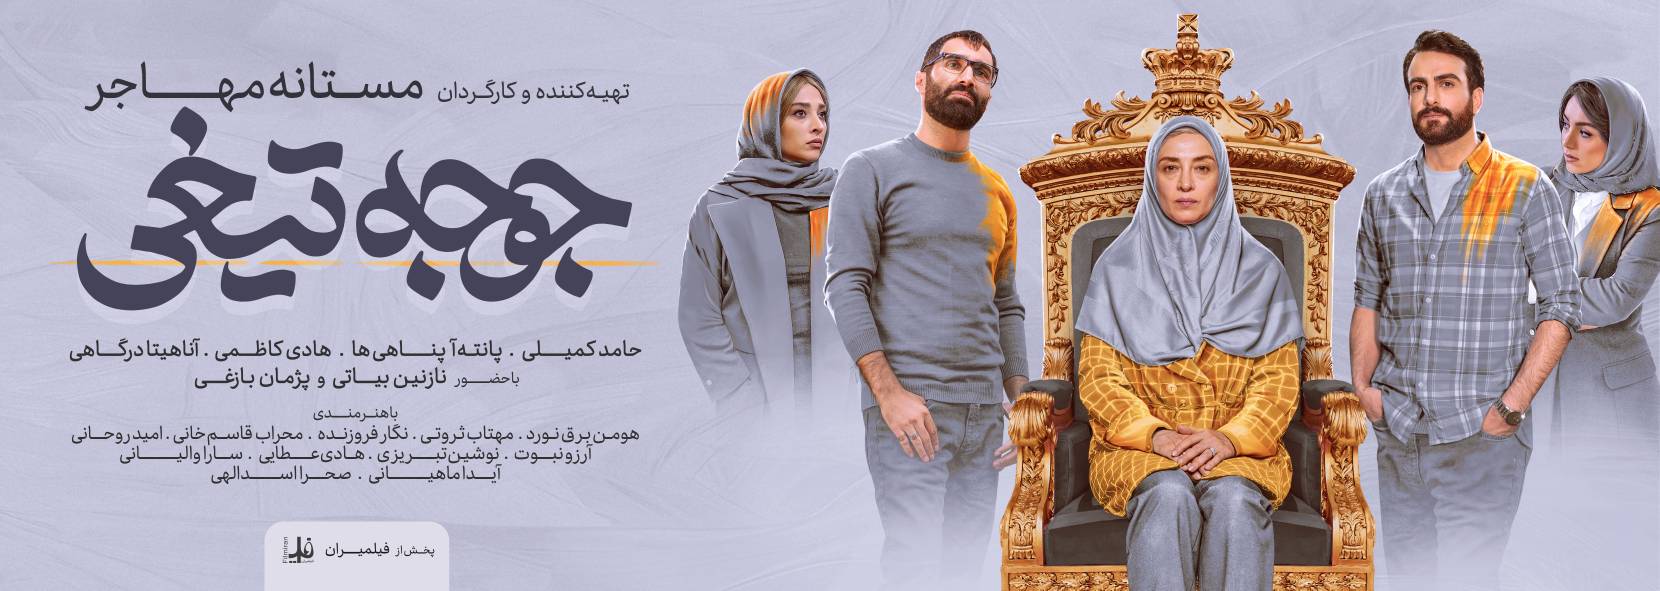 جوجه تیغی، یک کمدی به دور از ابتذال/روایت زنی که می‌خواهد اولین رییس جمهور ایران شود